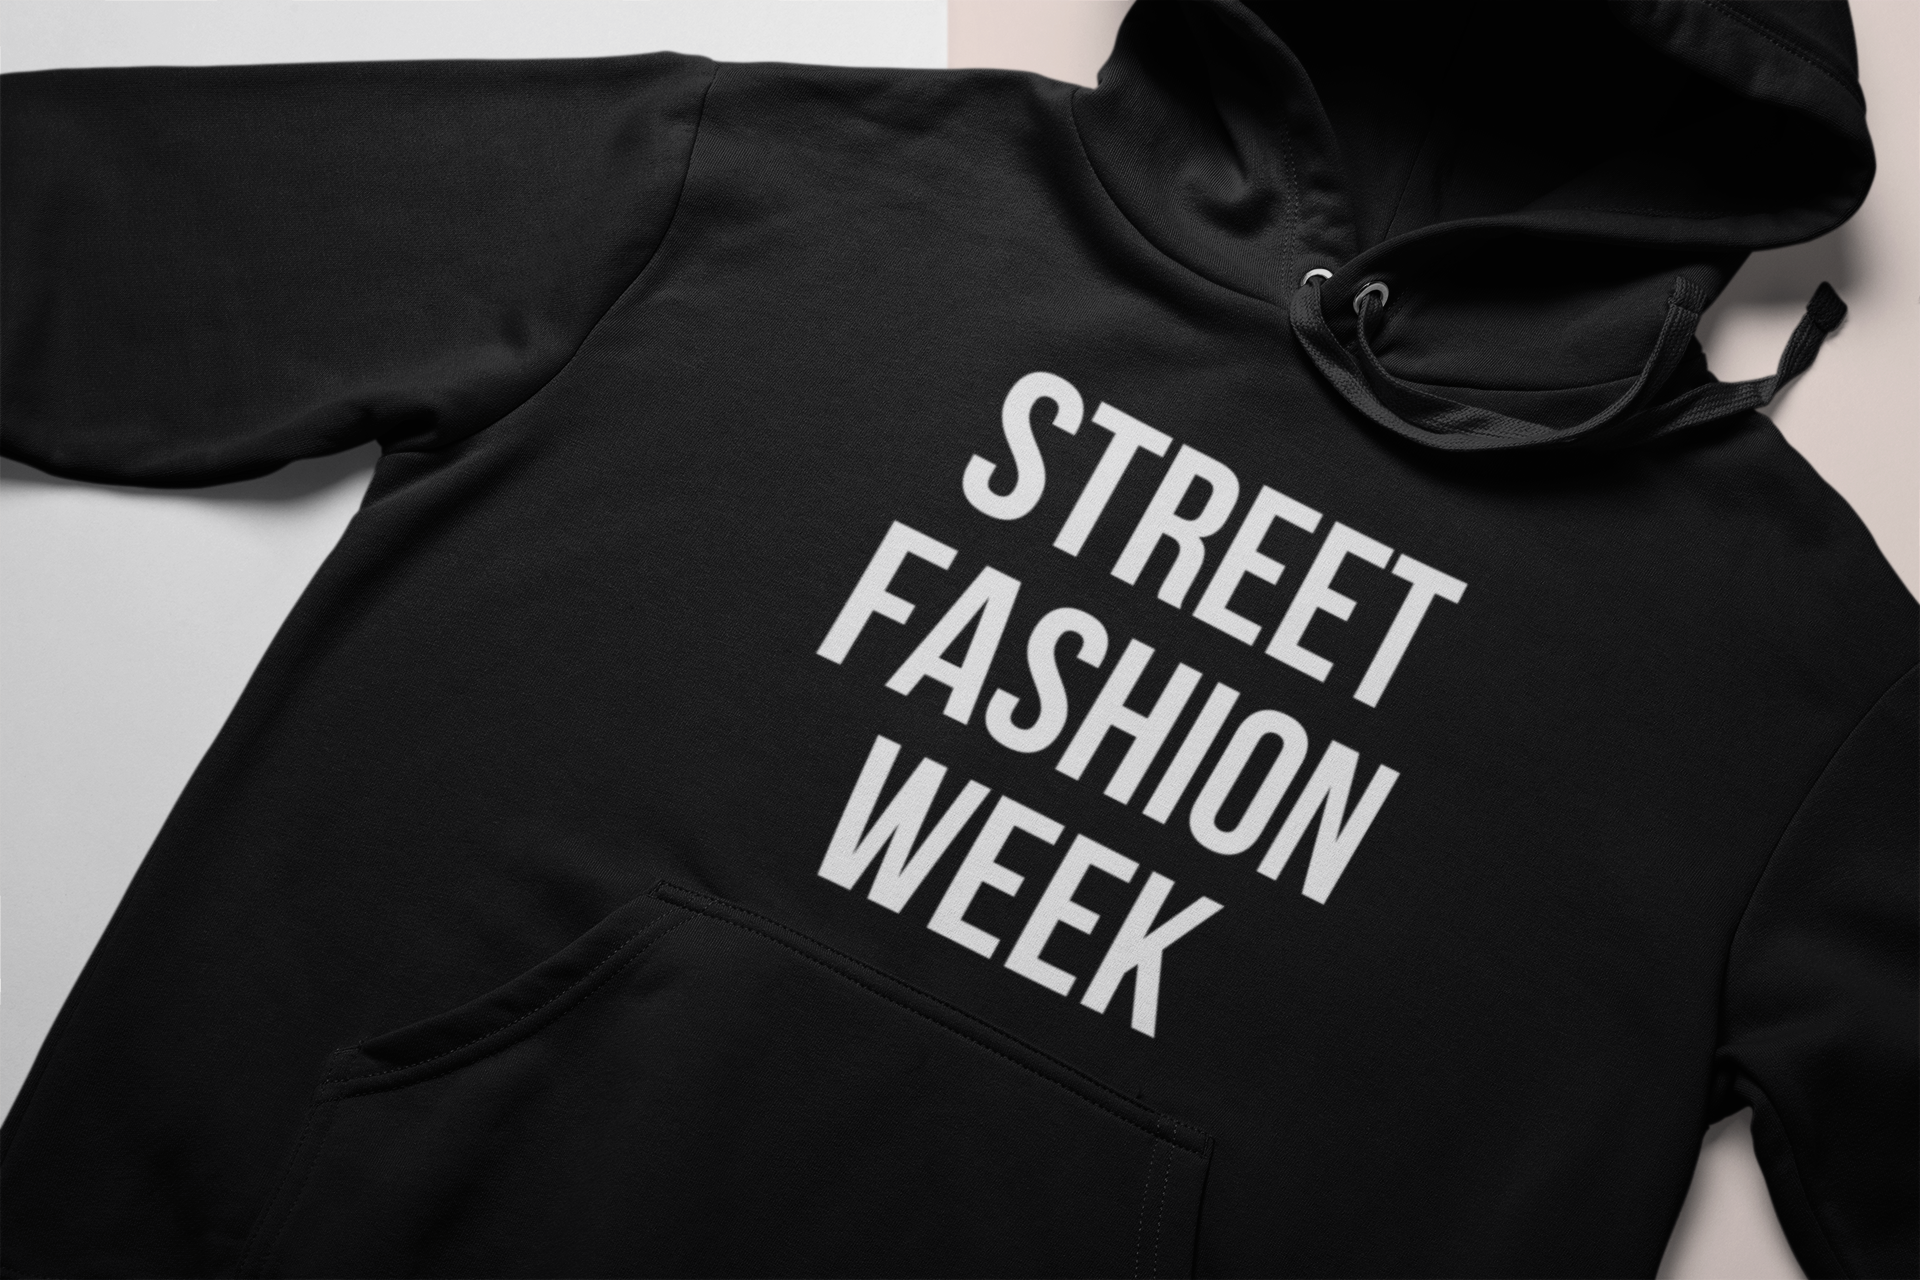 Street Fashion Week Hoodie